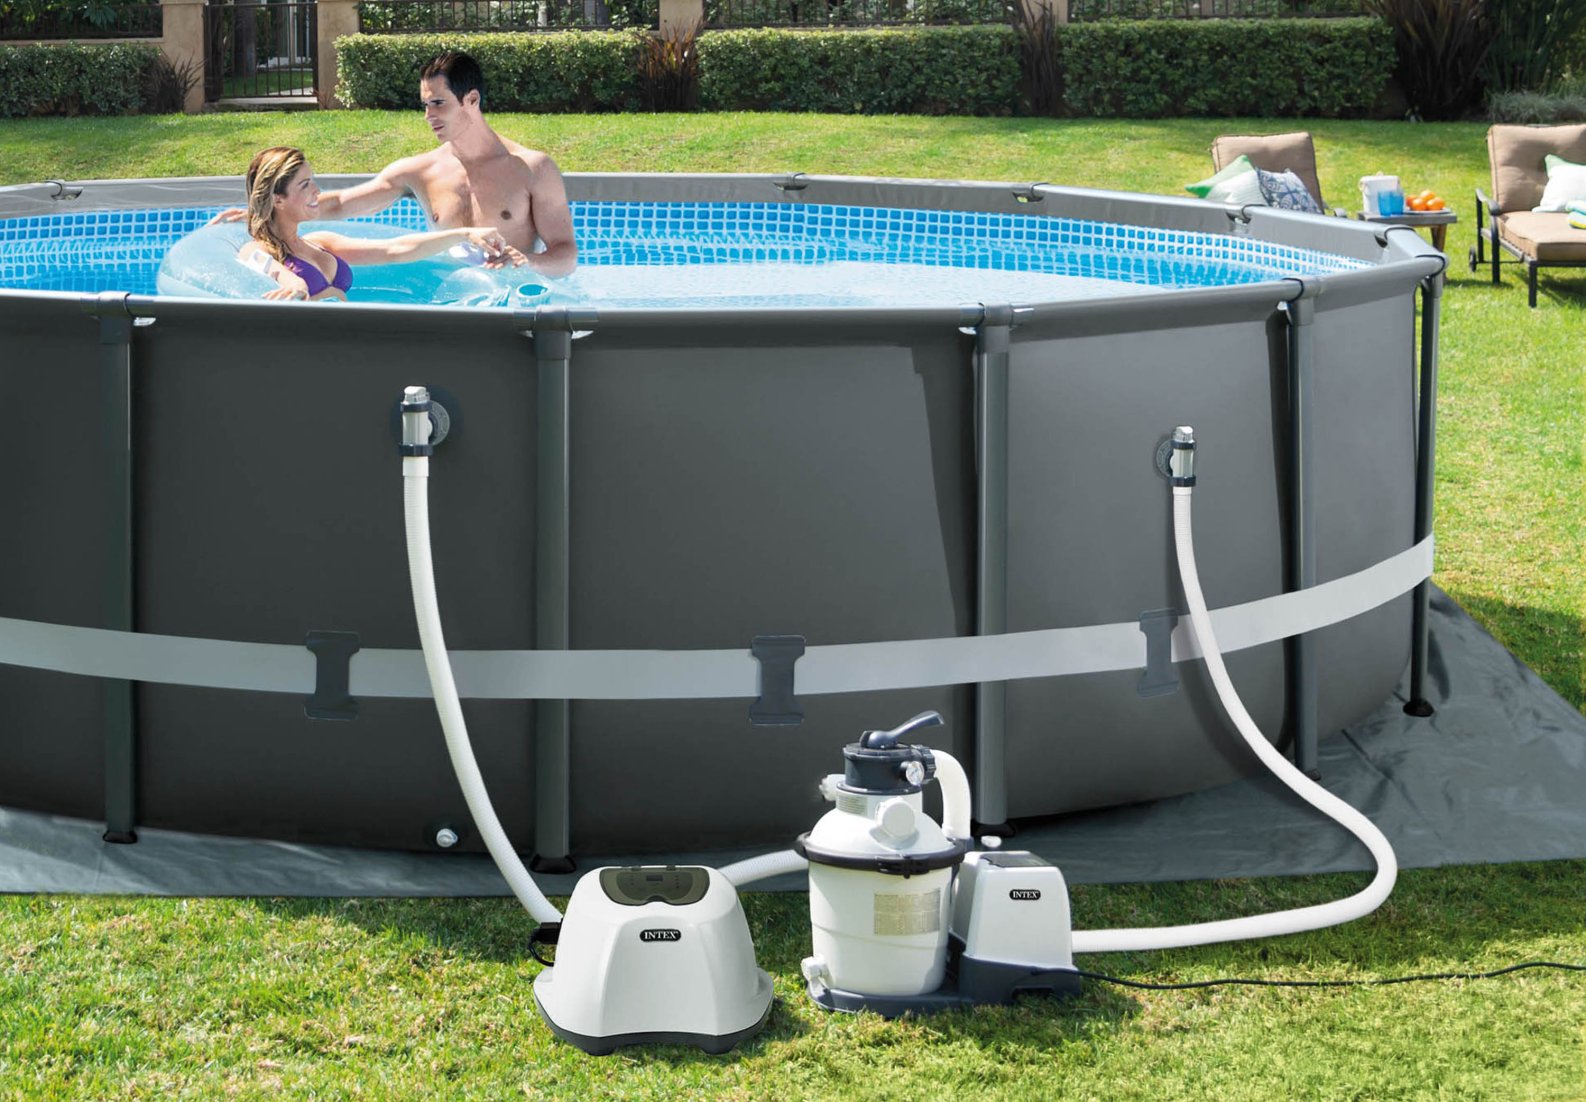 Chlorinátor Intex Krystal Clear 26668 zajistí čistější a zdravější vodu ve vašem vnitřním i venkovním bazénu o objemu do 26 m3, kdy ušetří až 85 % prostředků za bazénovou chemii.